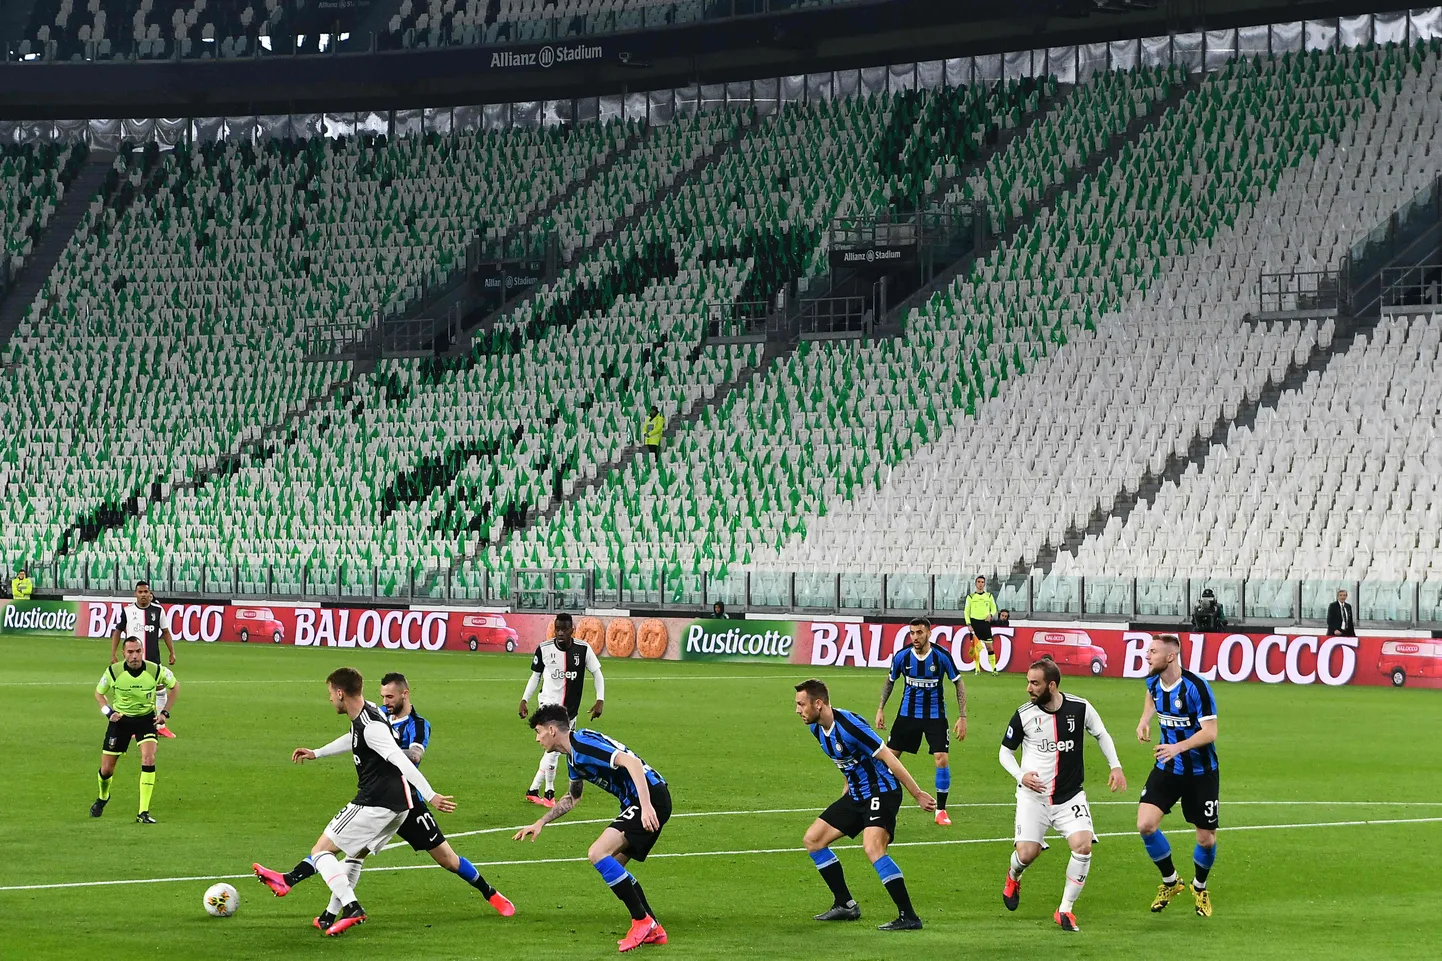 Itaalia vutihiiud Milano Inter ja Torini Juventus mängisid pühapäeval tühjade tribüünide ees. Hetkel on aga Itaalia jalgpalli meistrivõistlused peatatud.